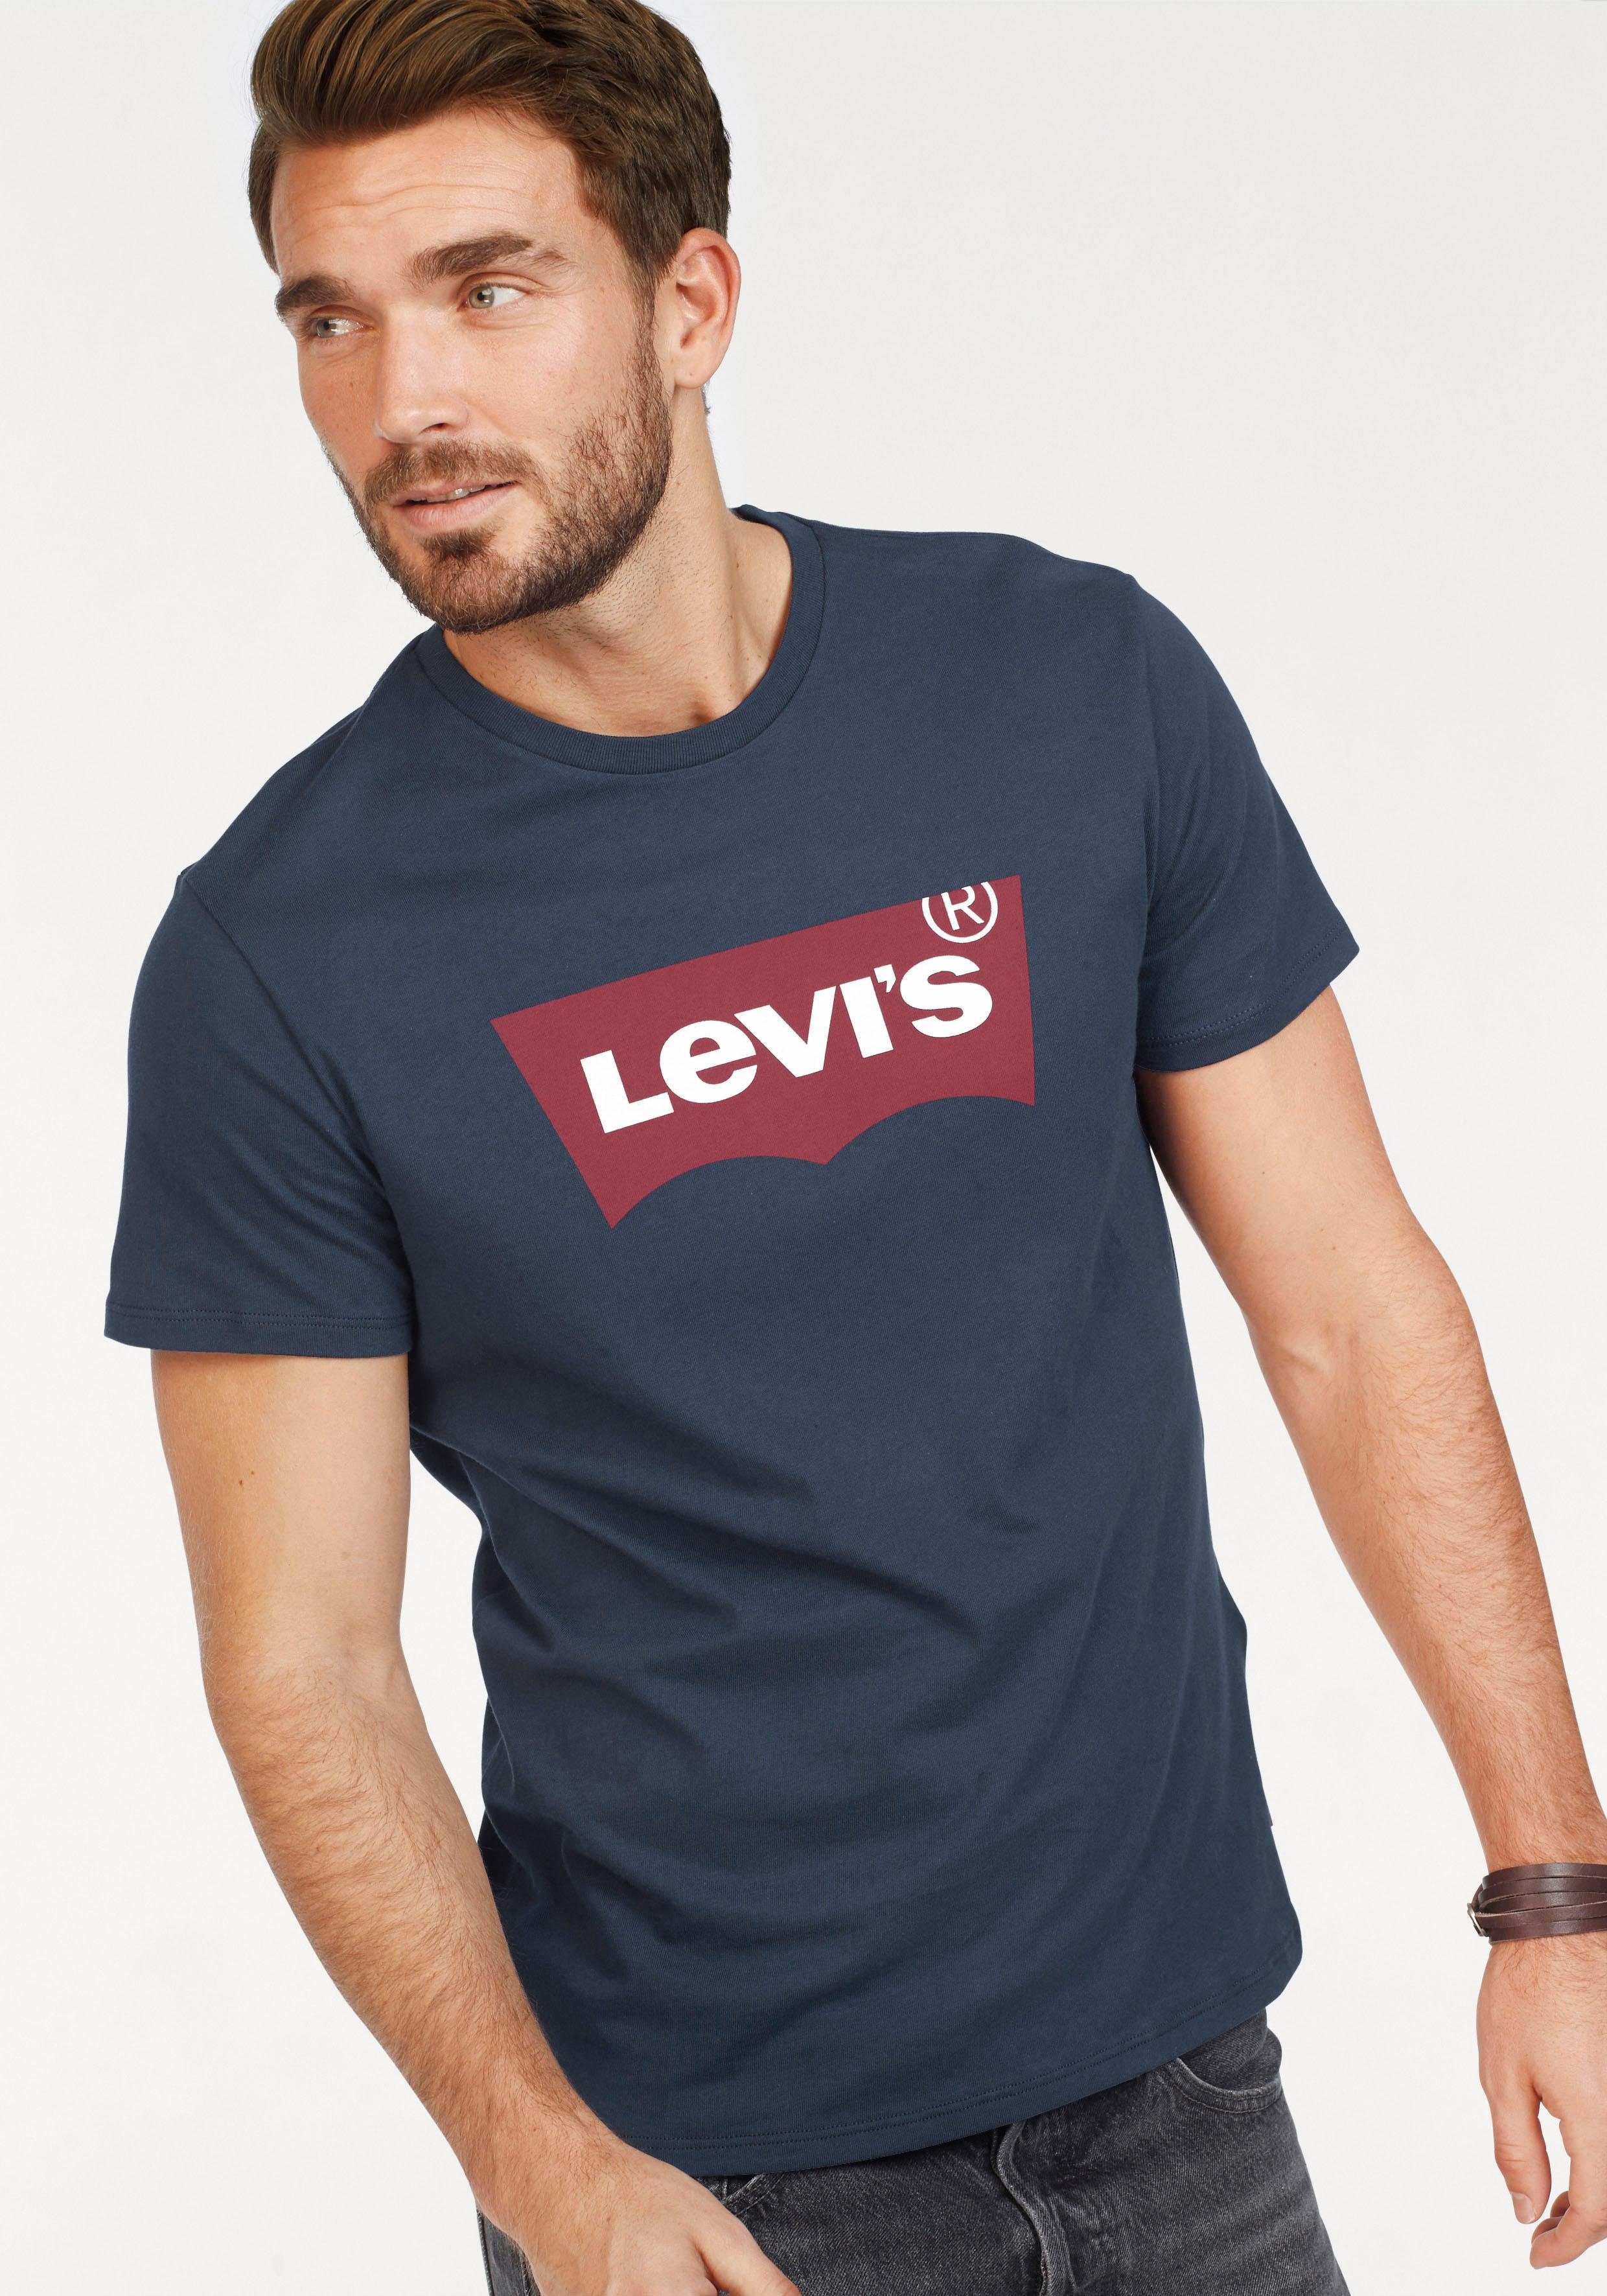 Günstige T-Shirts für Herren kaufen » T-Shirts SALE | OTTO